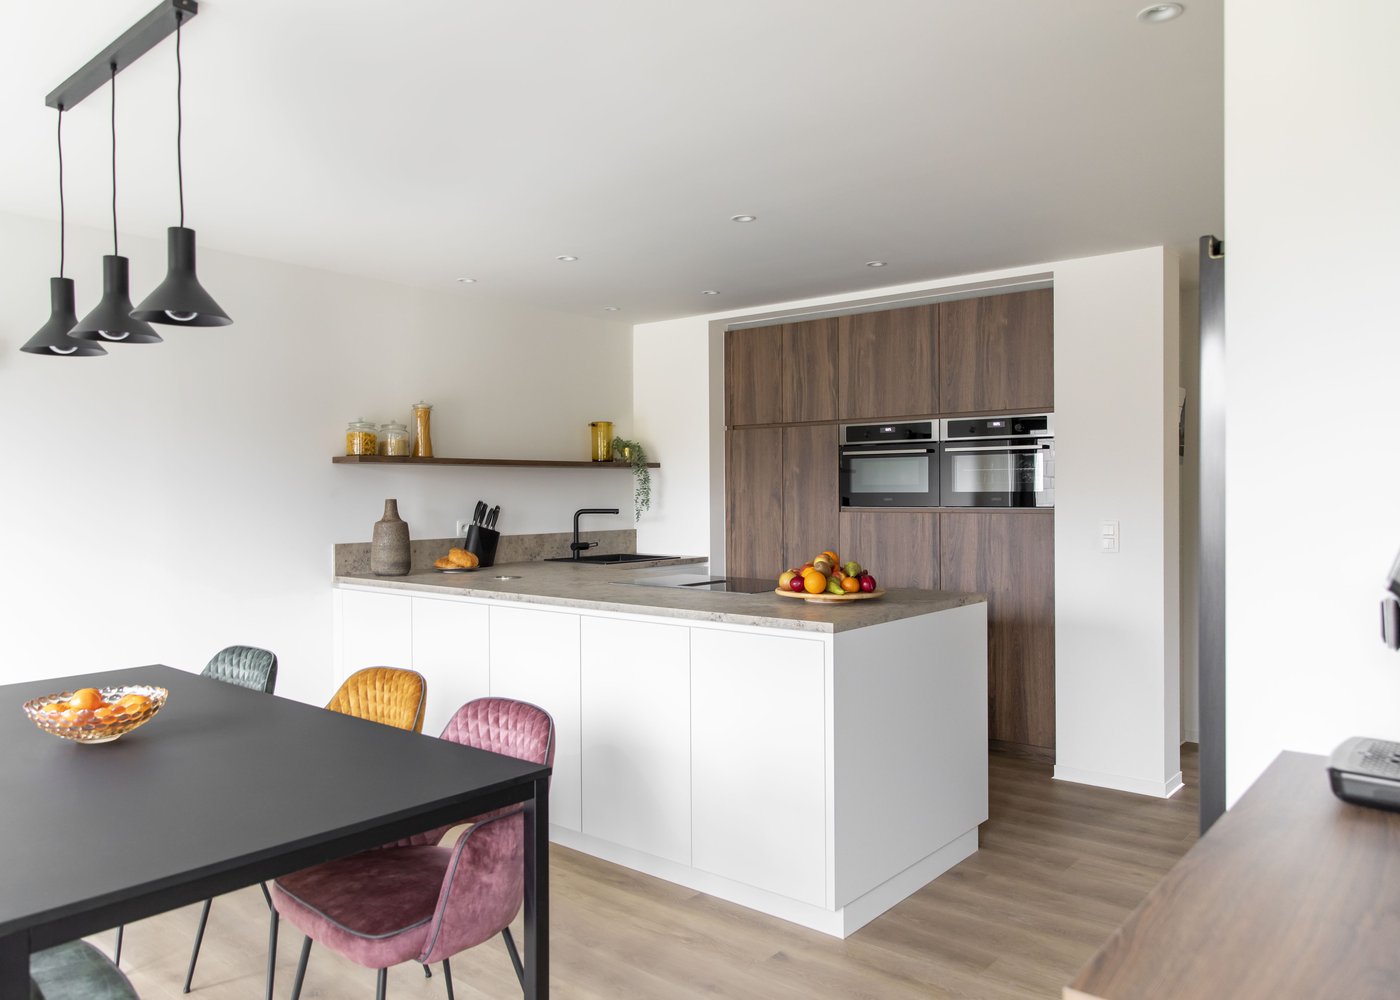 Ons huis/nieuw huis - Keuken Aurore en Kurt - Keuken met combinatie van laminaat in eikkleur en marmerlook